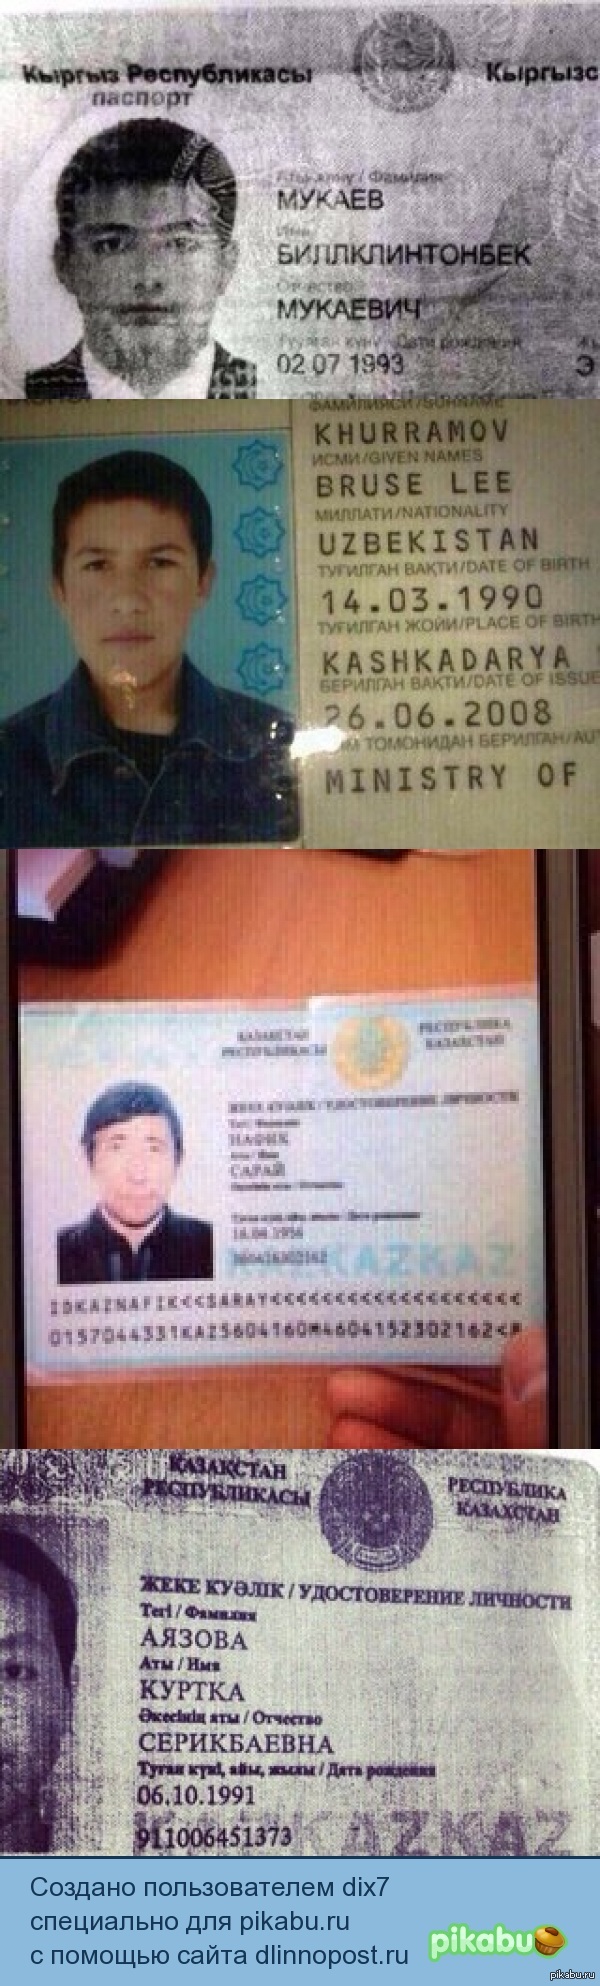 фотографии паспорта денис имя фамилия иванов